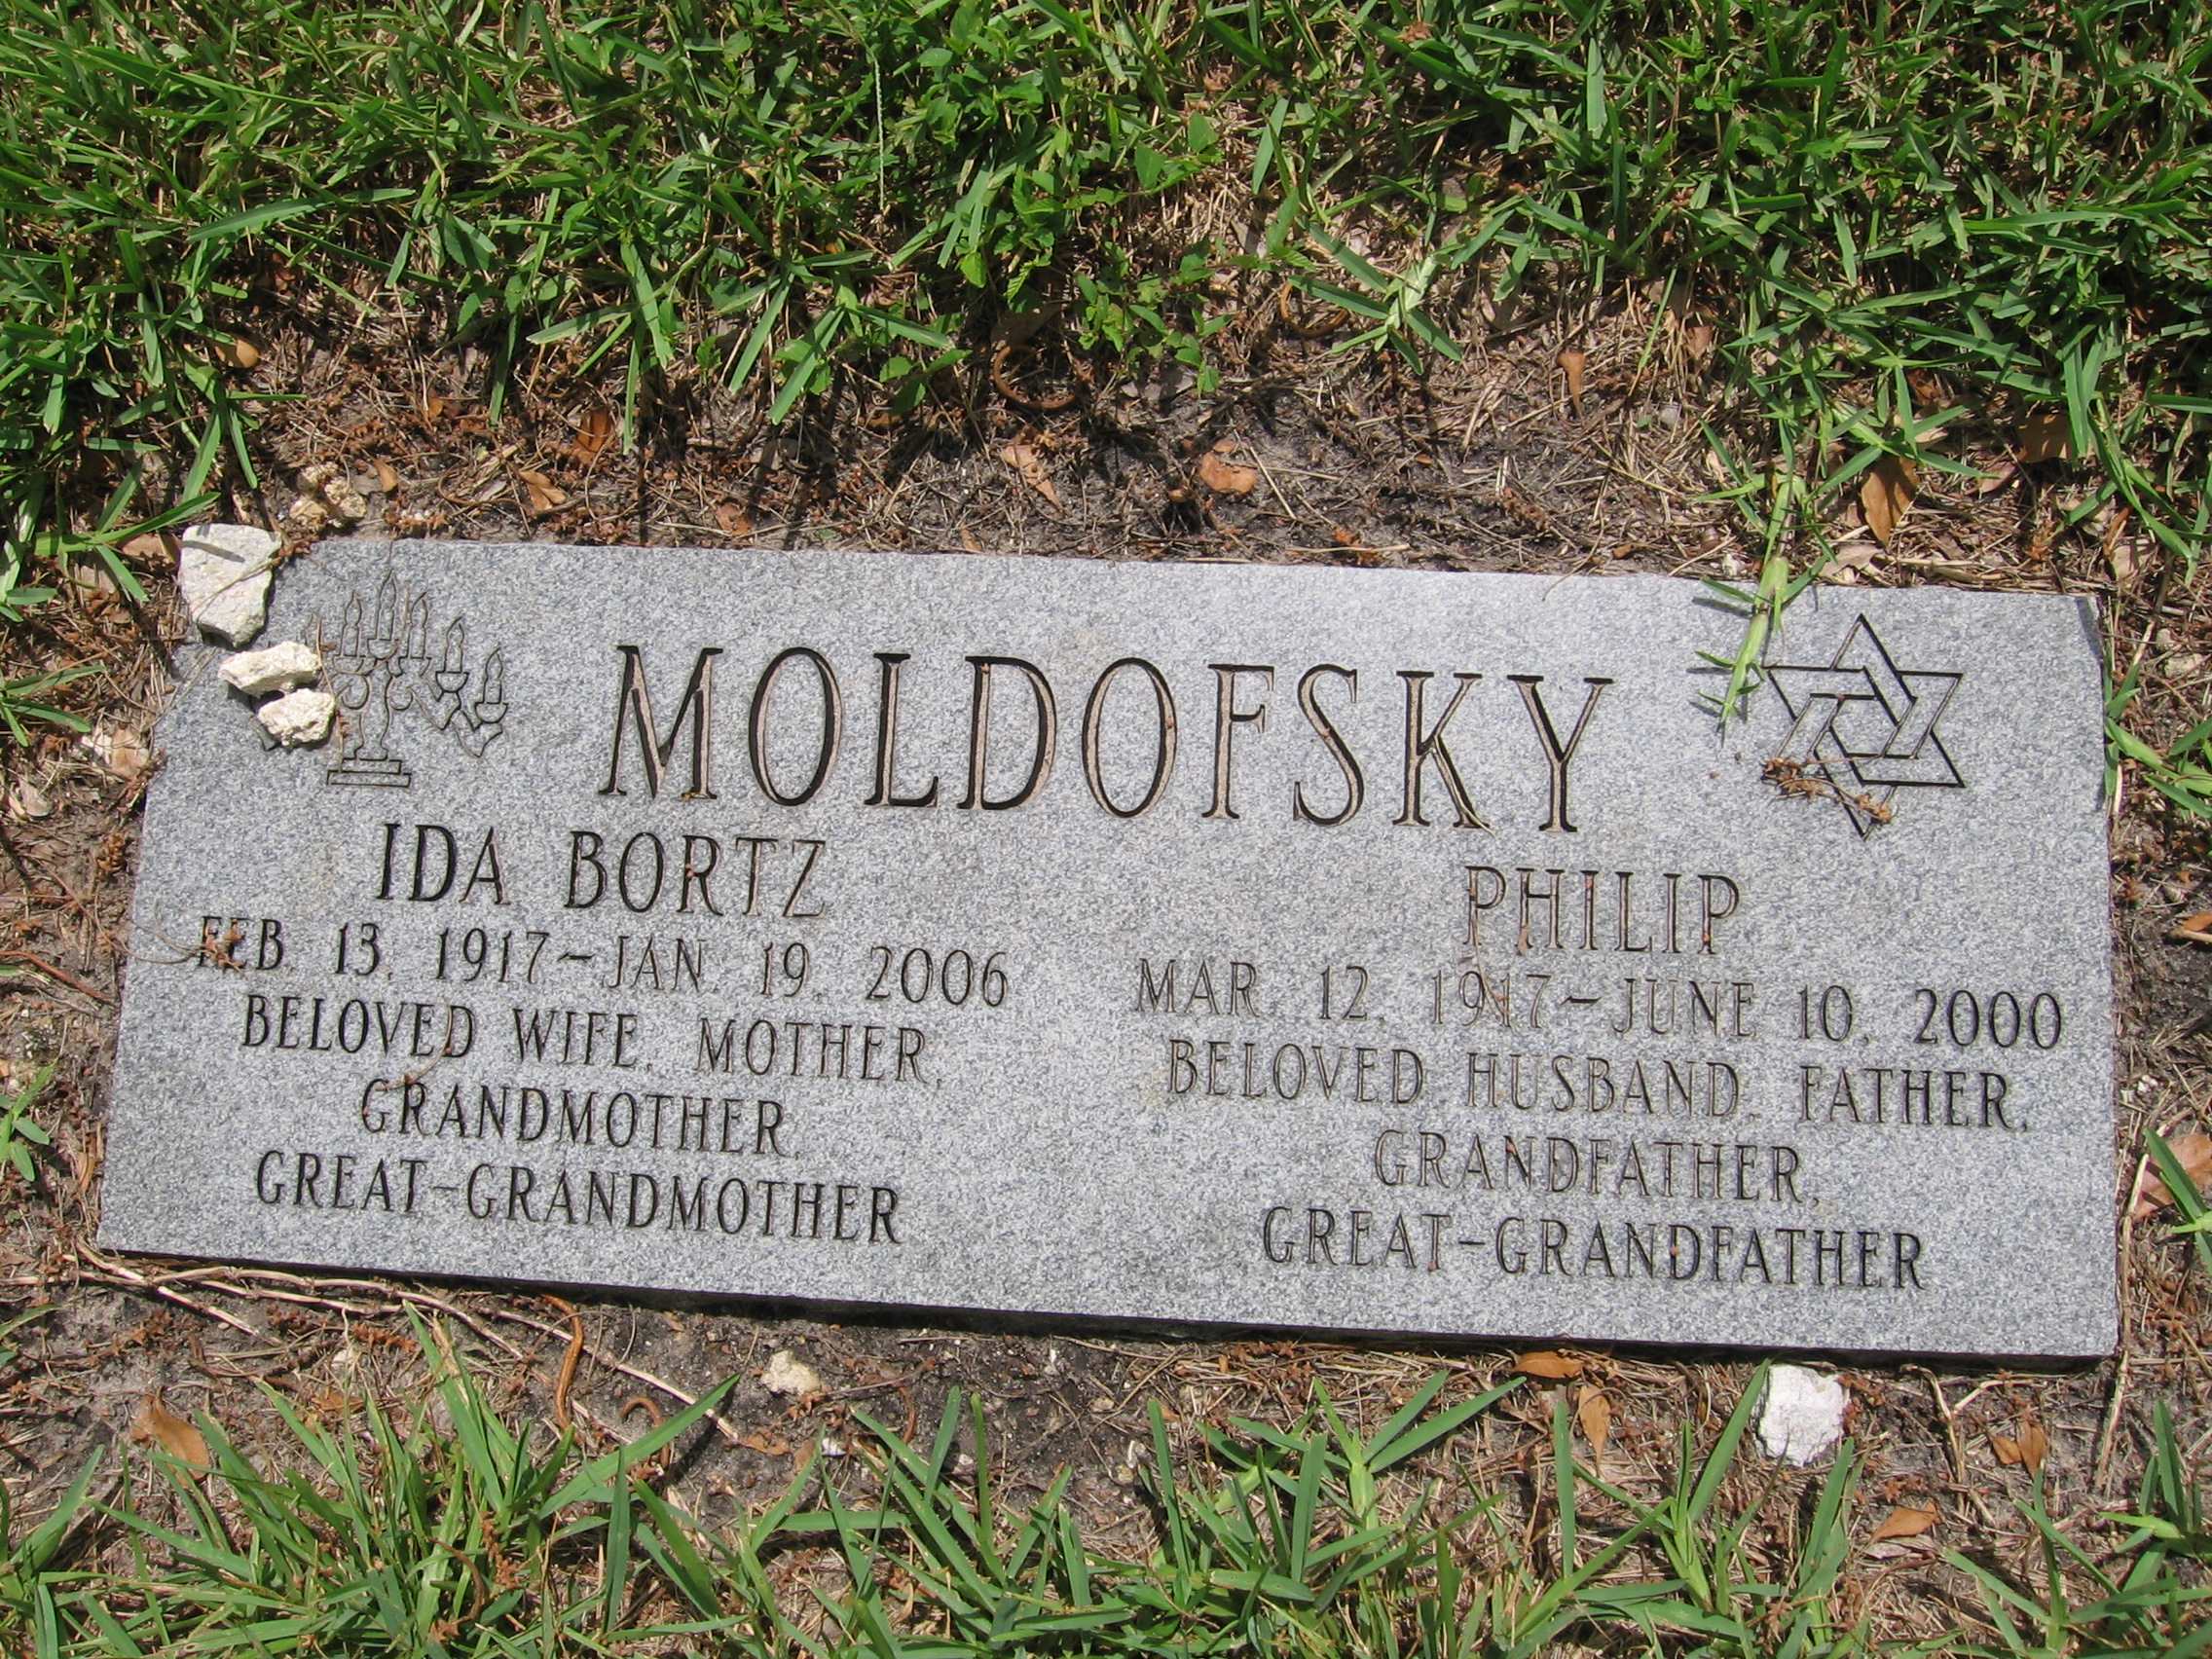 Ida Bortz Moldofsky